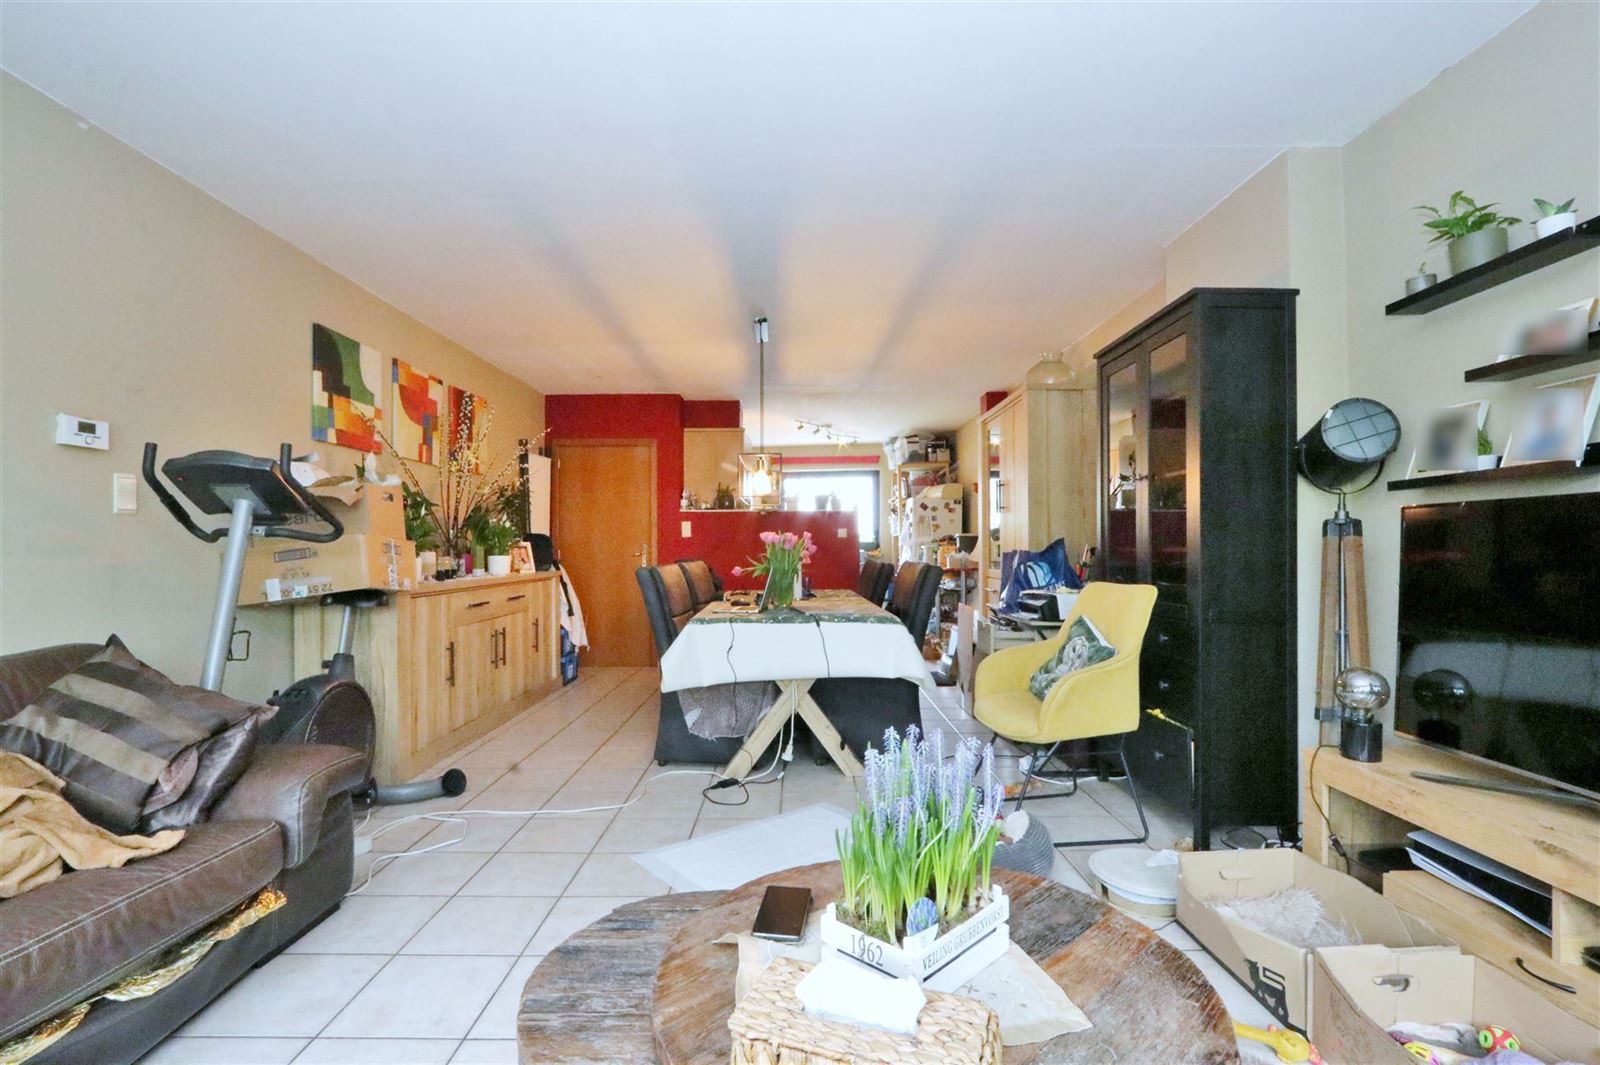 Duplex appartement met 3 slaapkamers, terras + garage te Sint-Genesius-Rode foto 7